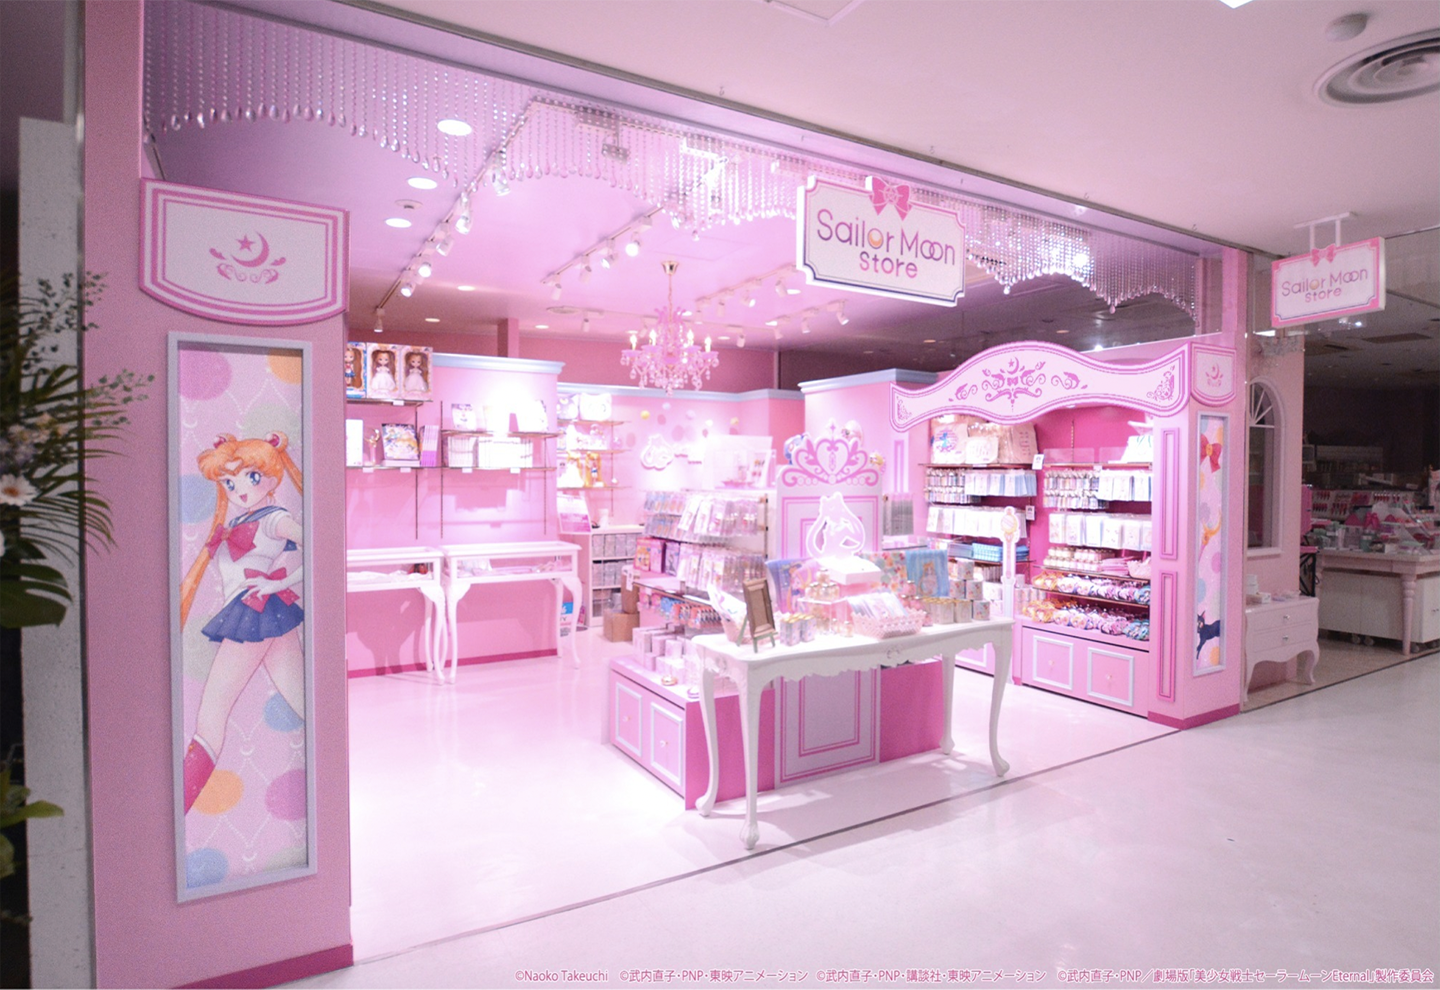 Sailormoon store Tokyo